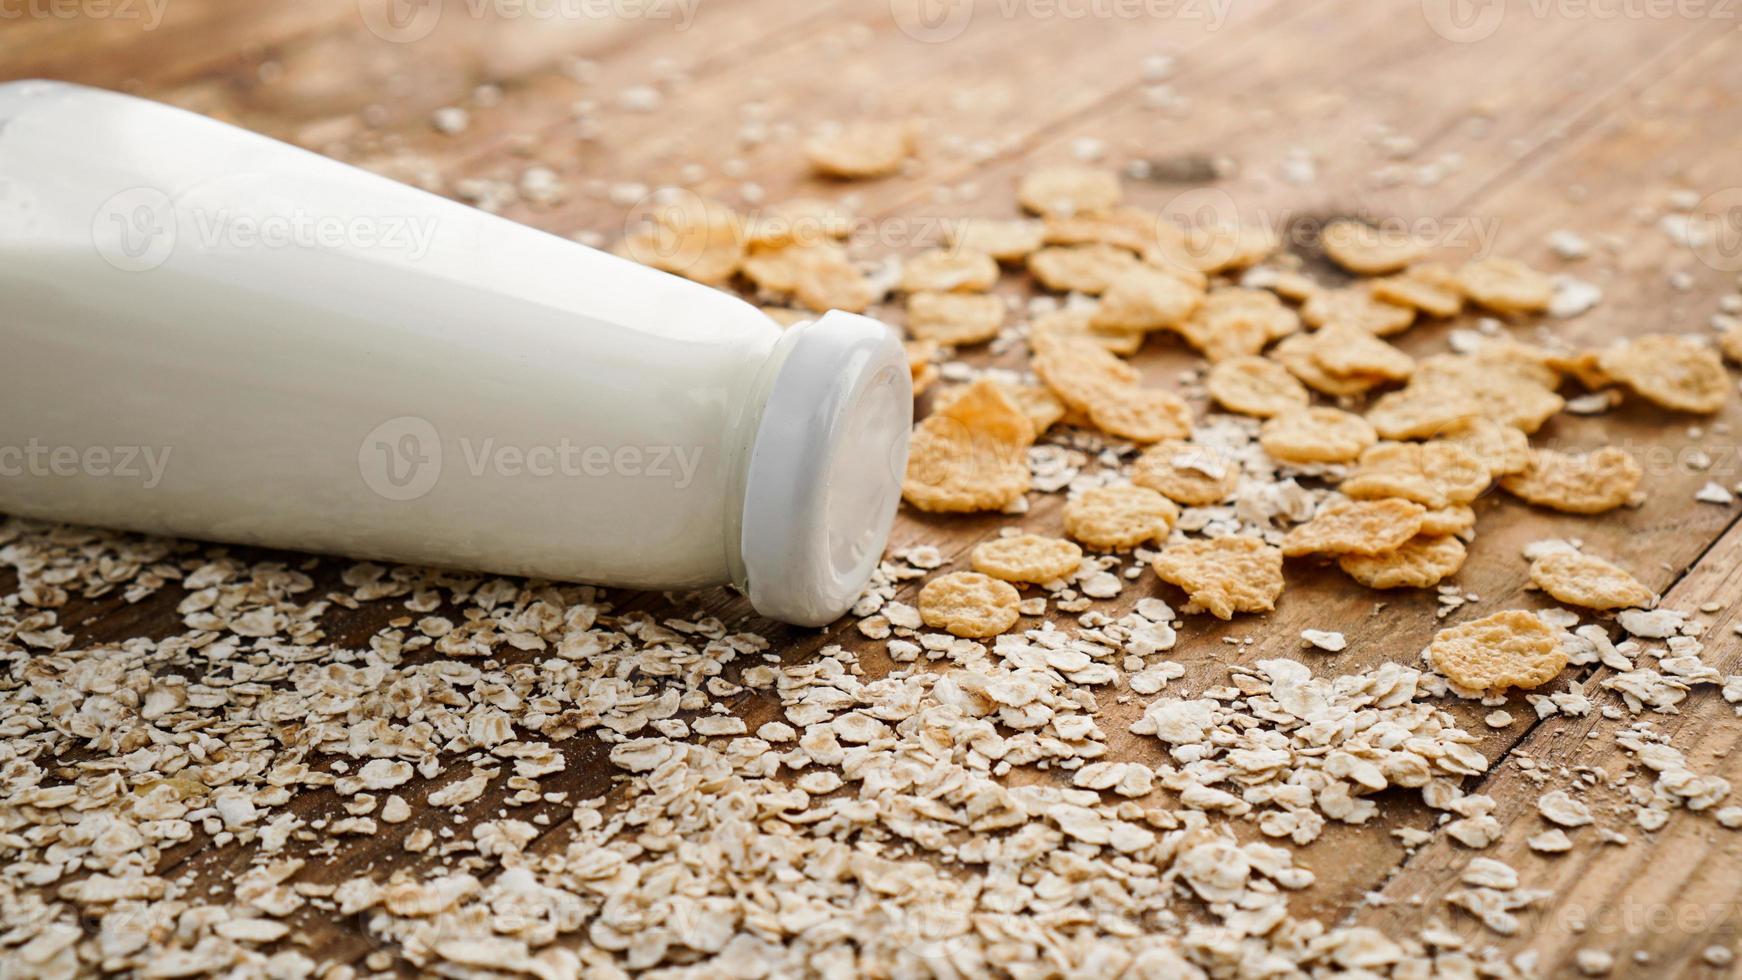 frische Milchflasche auf Holzuntergrund mit Hafer und Getreide foto